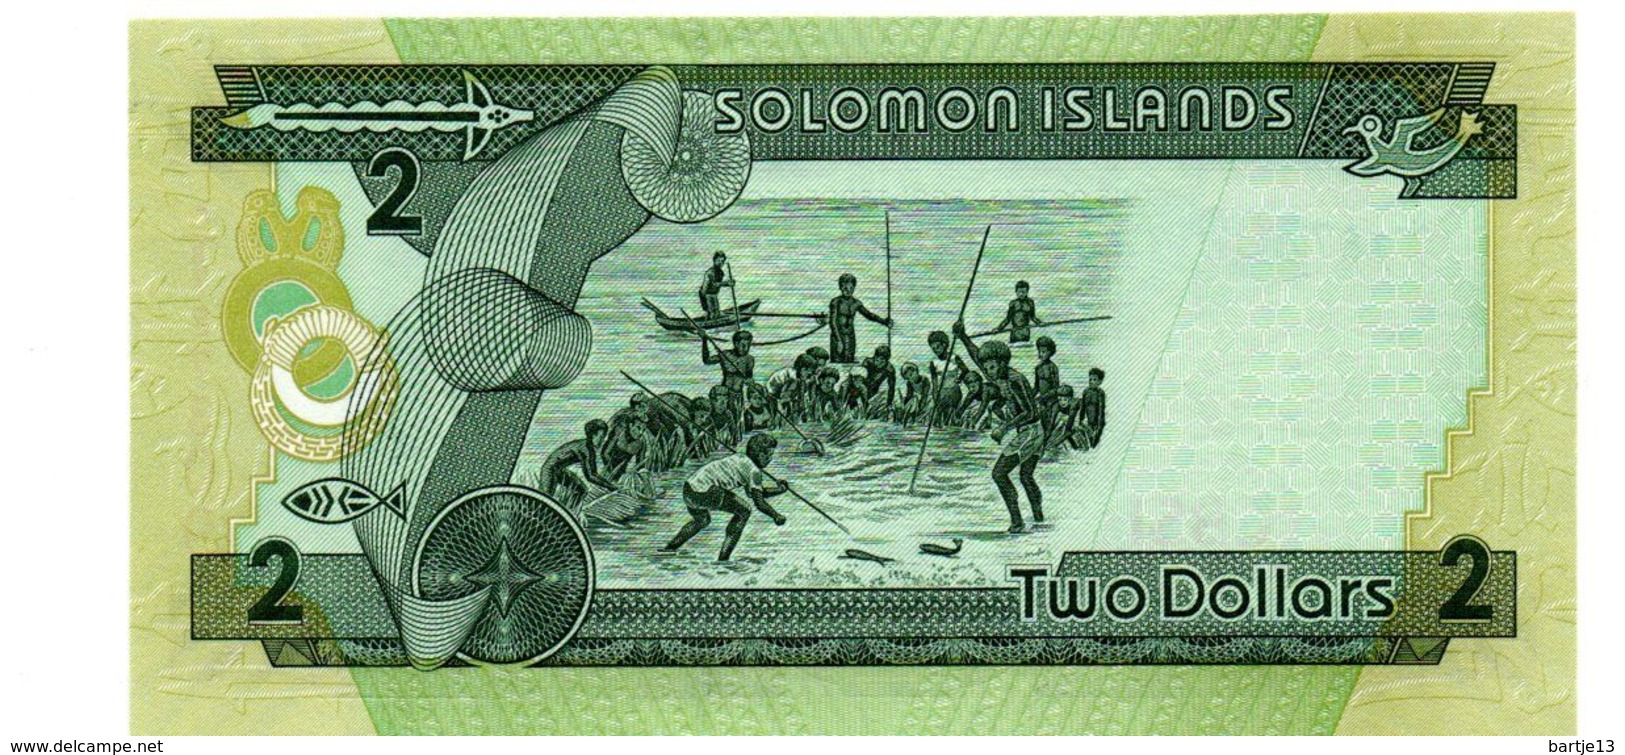 SOLOMON ISLANDS 2 DOLLARS PICK 18 UNCIRCULATED POLYMEER - Solomonen